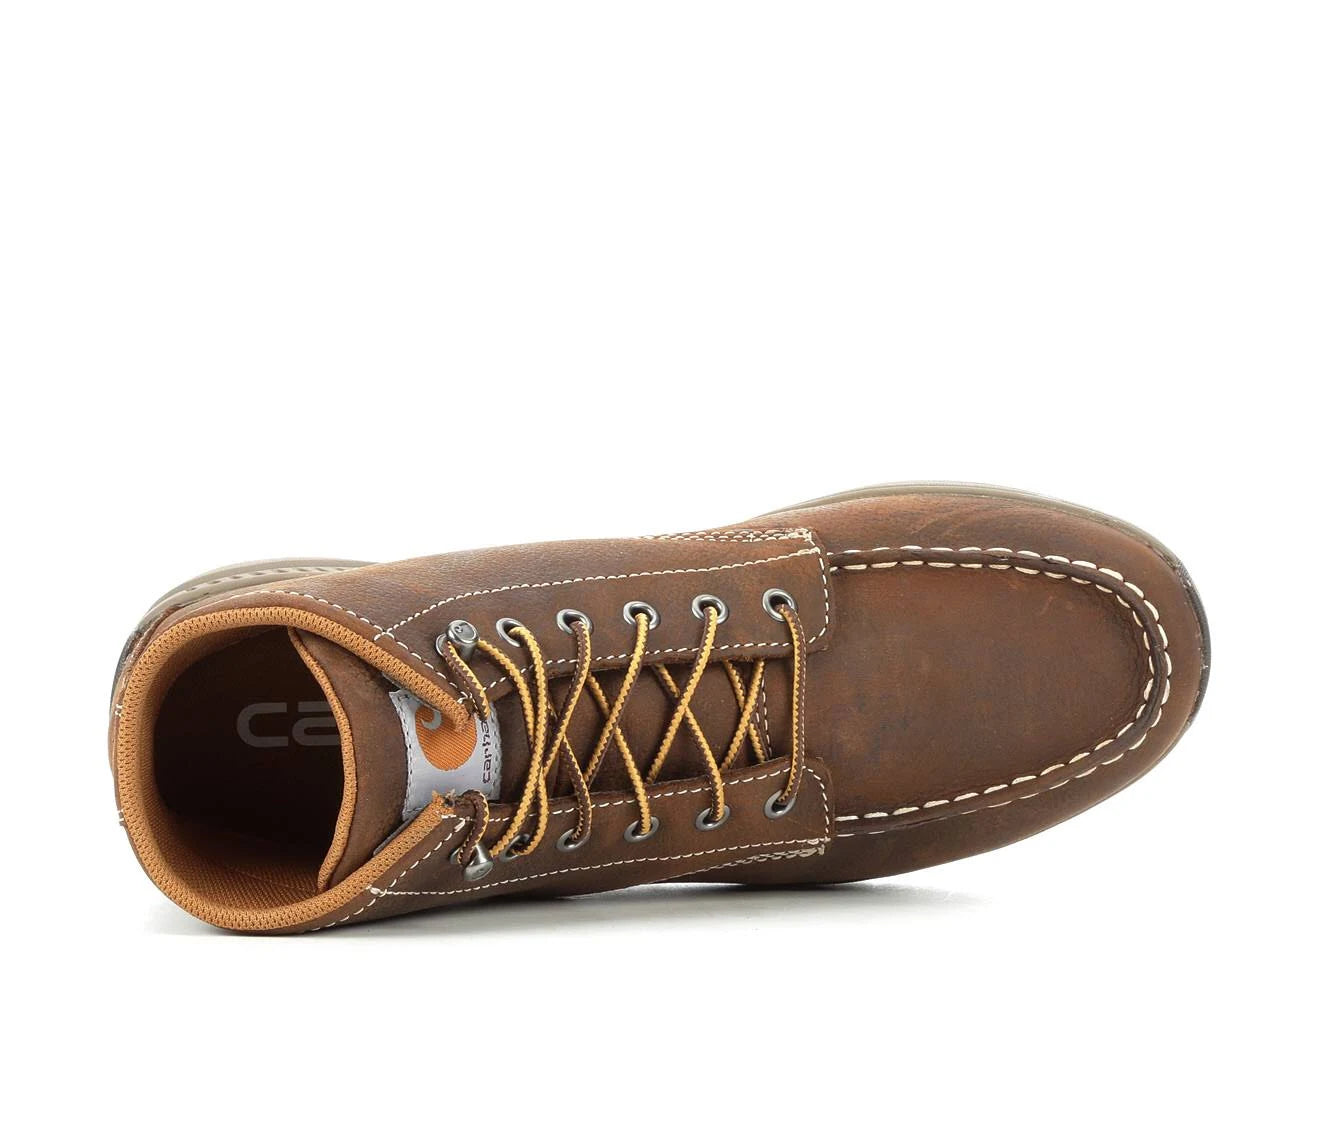 Carhartt Men's Non-Safety Toe Oxford Shoe